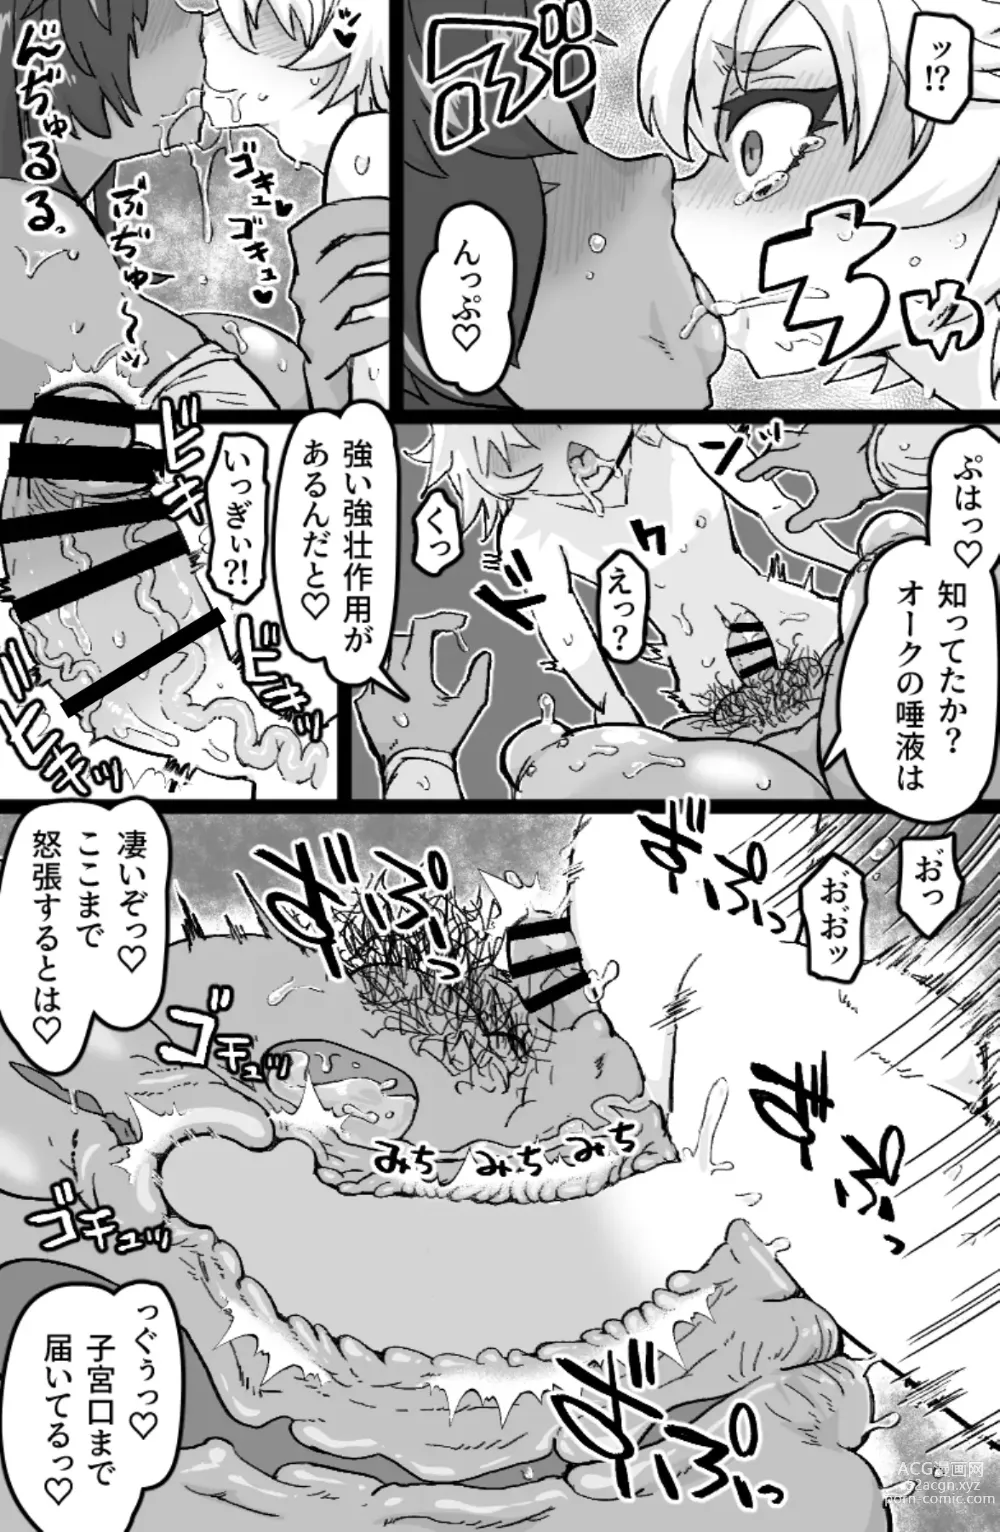 Page 12 of doujinshi Mesuouku no fudeoroshi kkusu